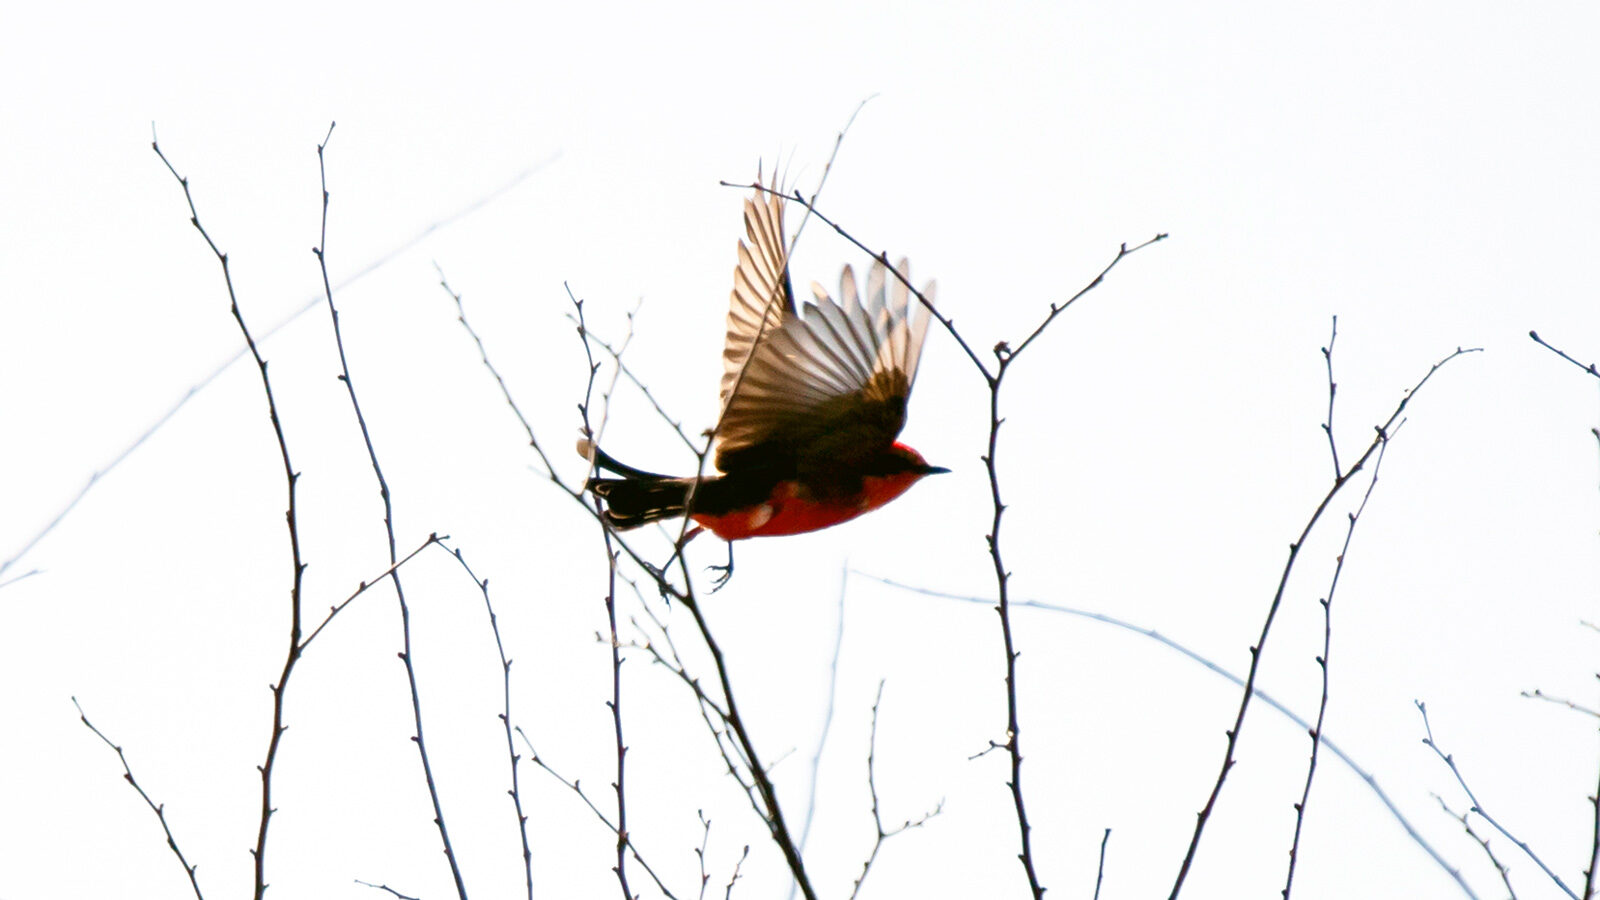 Vermillion flycatcher flying